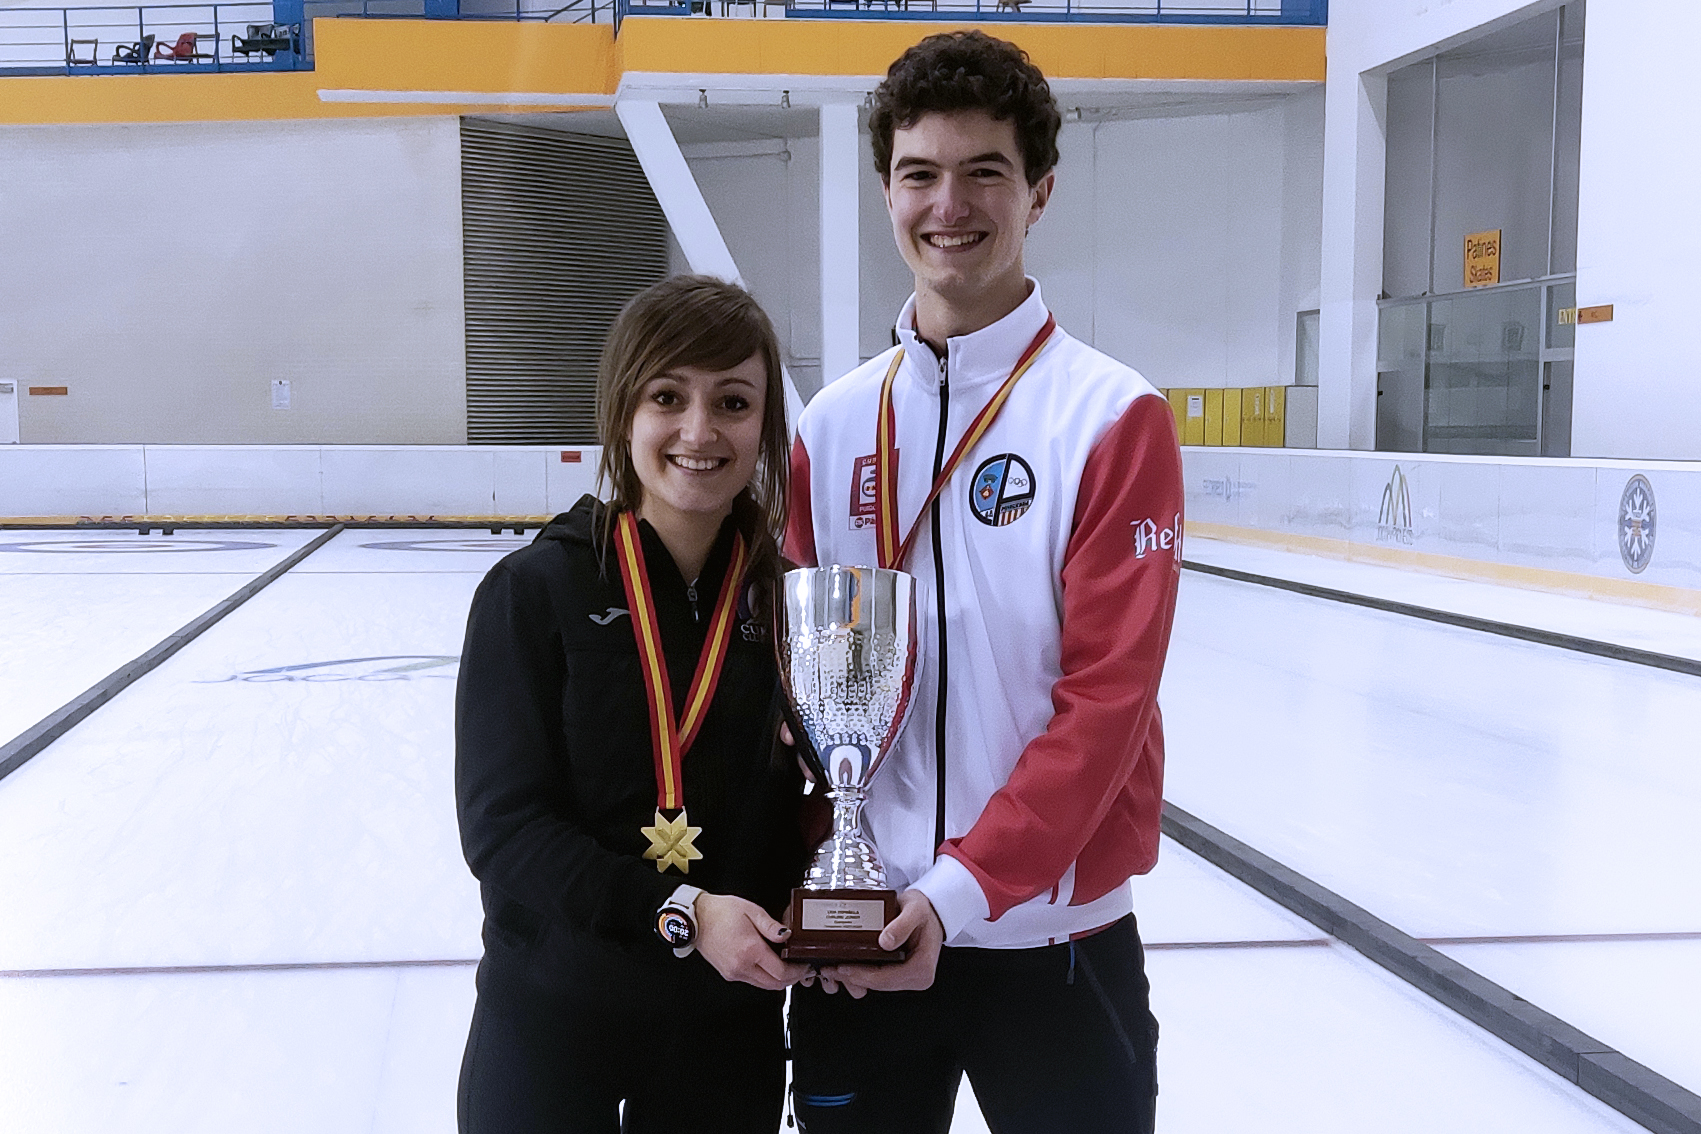 curling, Curling: Liga Junior de Dobles Mixto s, Real Federación Española Deportes de Hielo